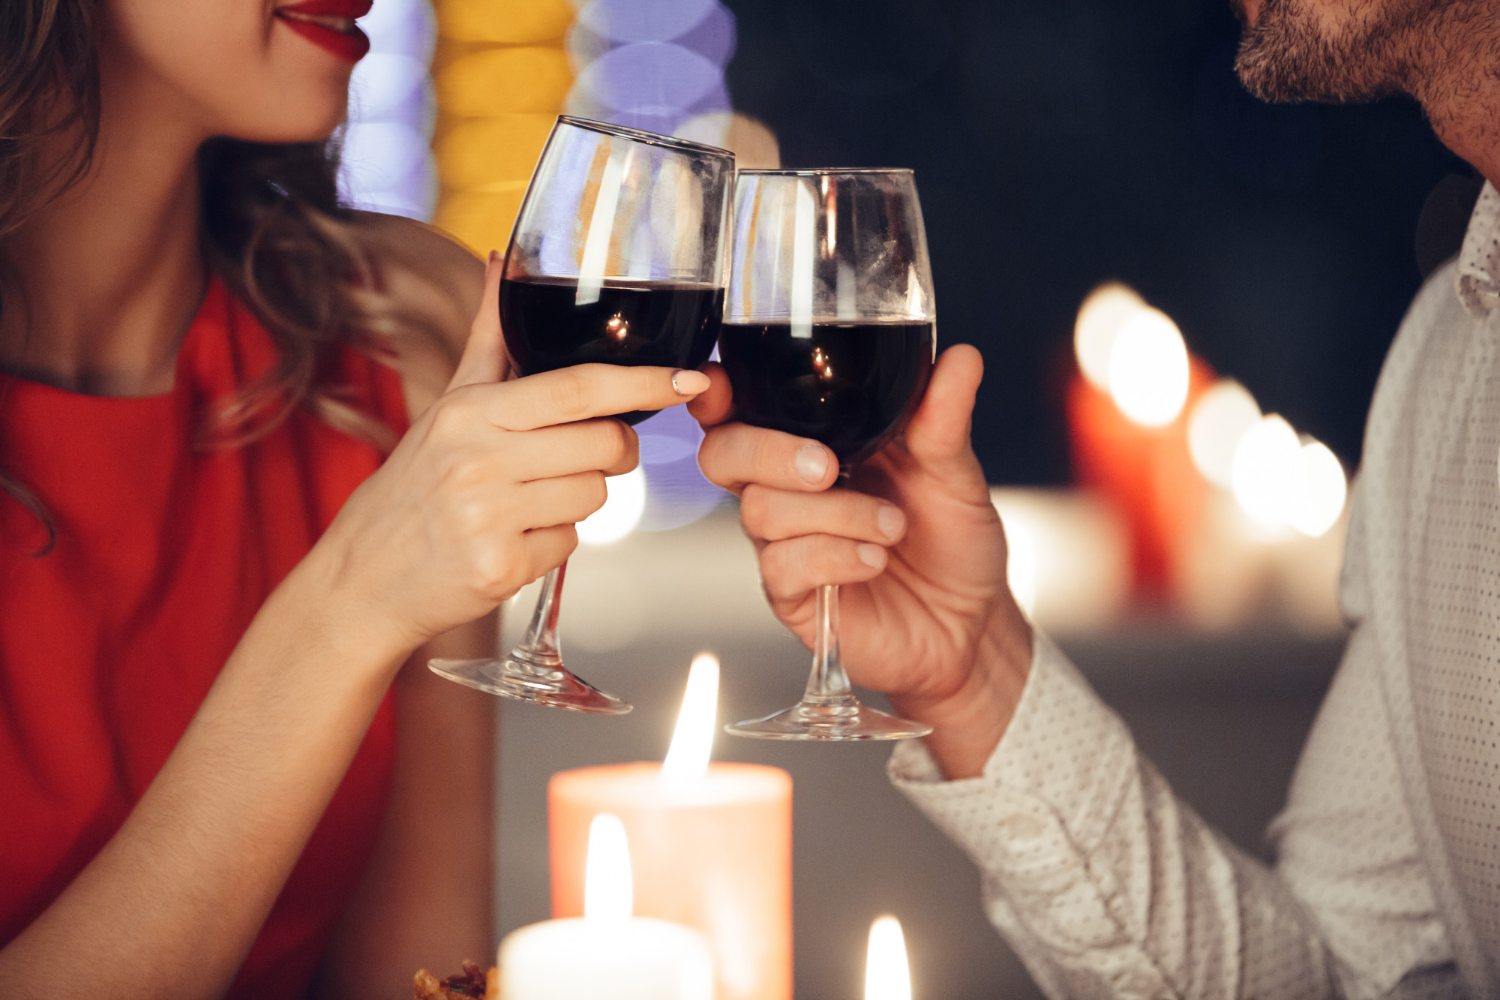 Jantar romântico: na imagem, uma mulher e um homem brindam com taças de vinho em frente a velas acesas.